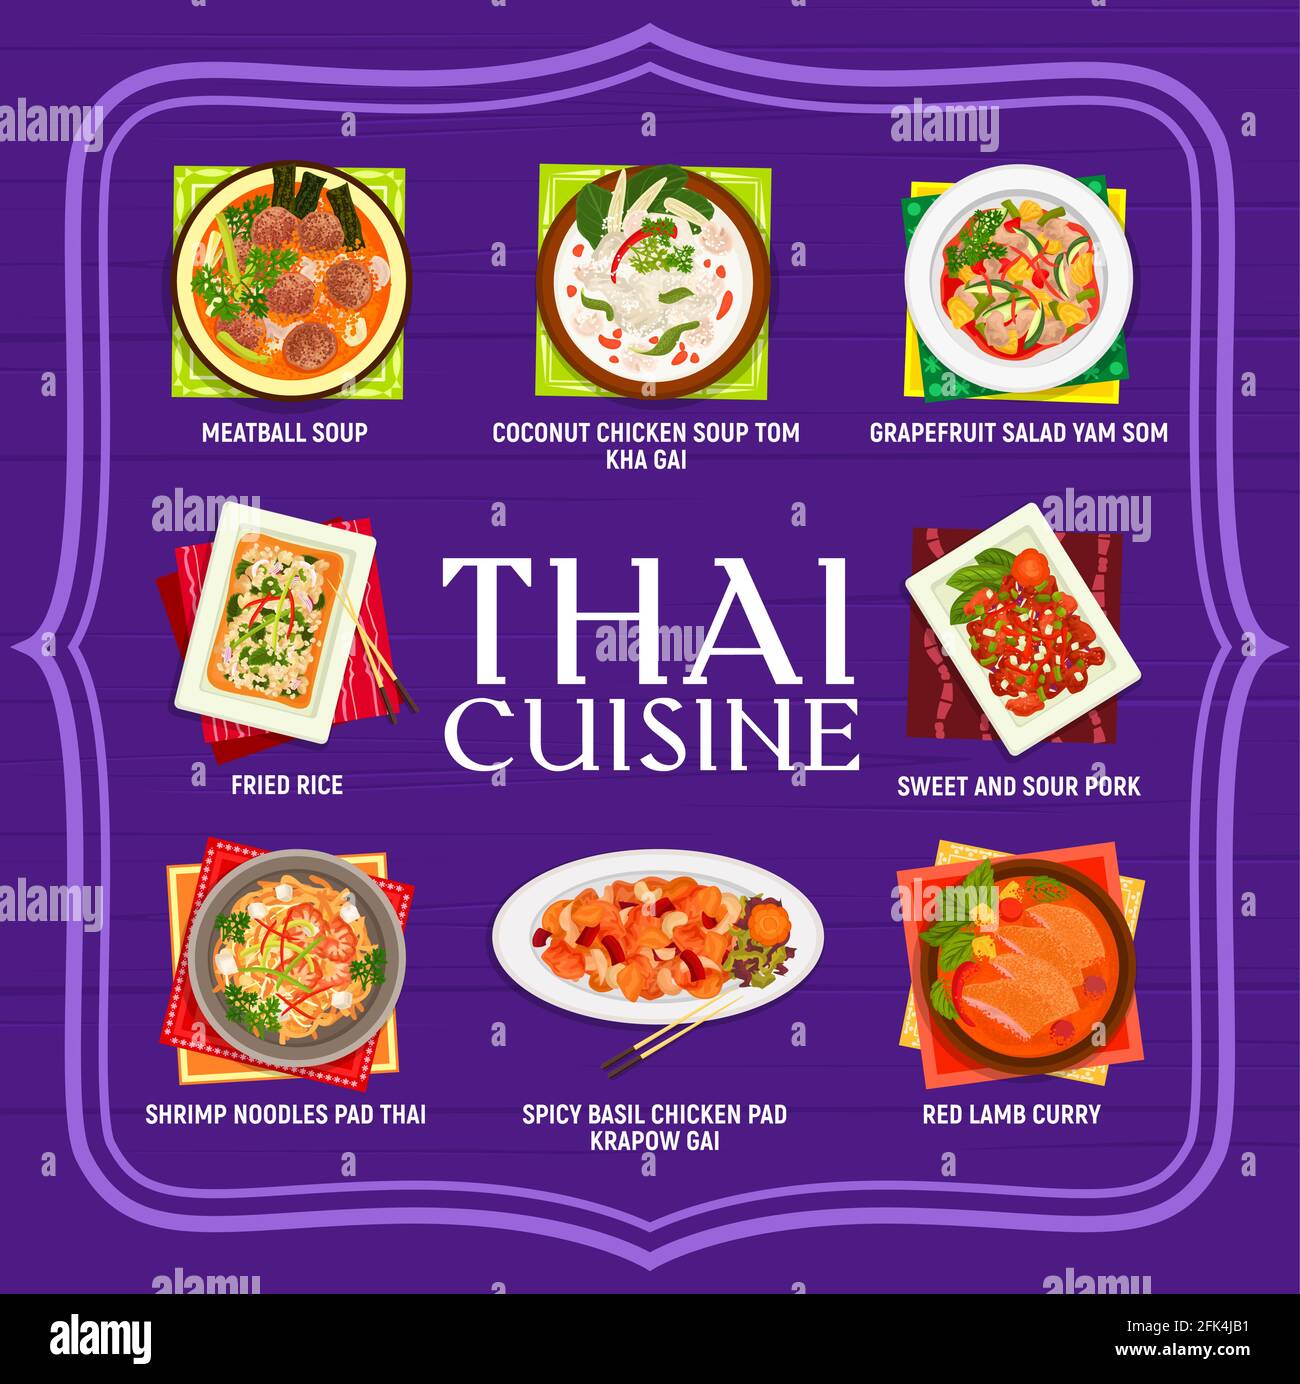 Thailändische Küche Restaurant Essen Menü. Grapefruitsalat, Yam som, rotes Lammkurrygericht und gebratener Reis, Basilikum-Hühnchen-Pad-Kparow-Gai und Pad-thai-Nudeln, Huhn Stock Vektor